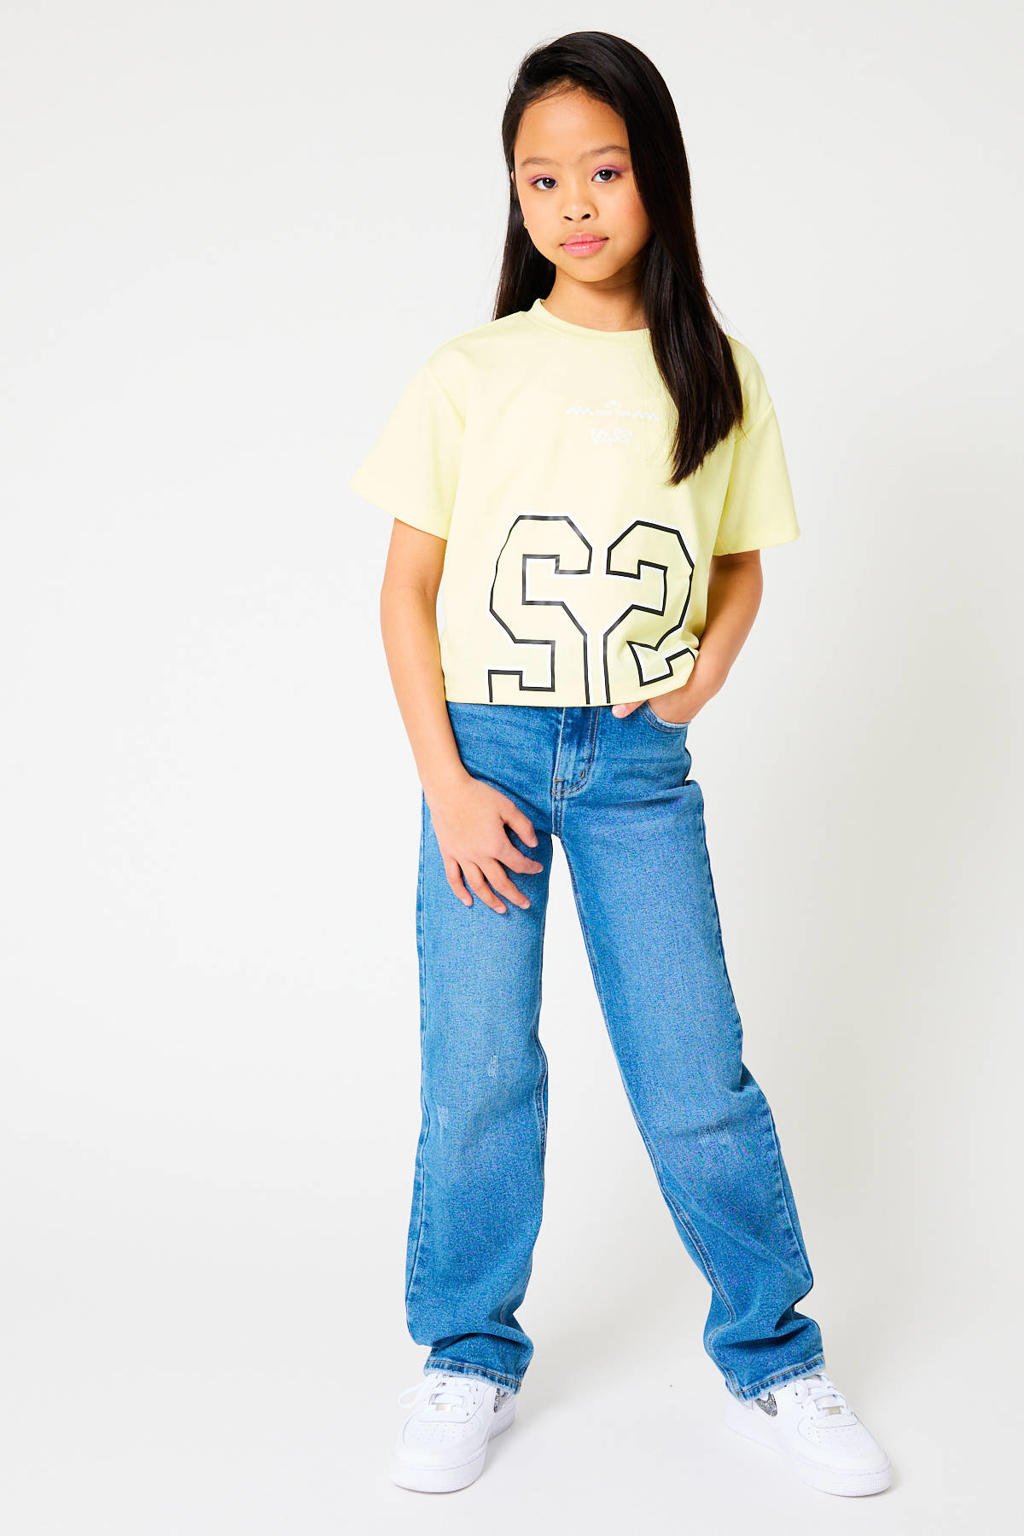 Lichtgele meisjes CoolCat Junior T-shirt Ena CG van polyester met printopdruk, korte mouwen en ronde hals